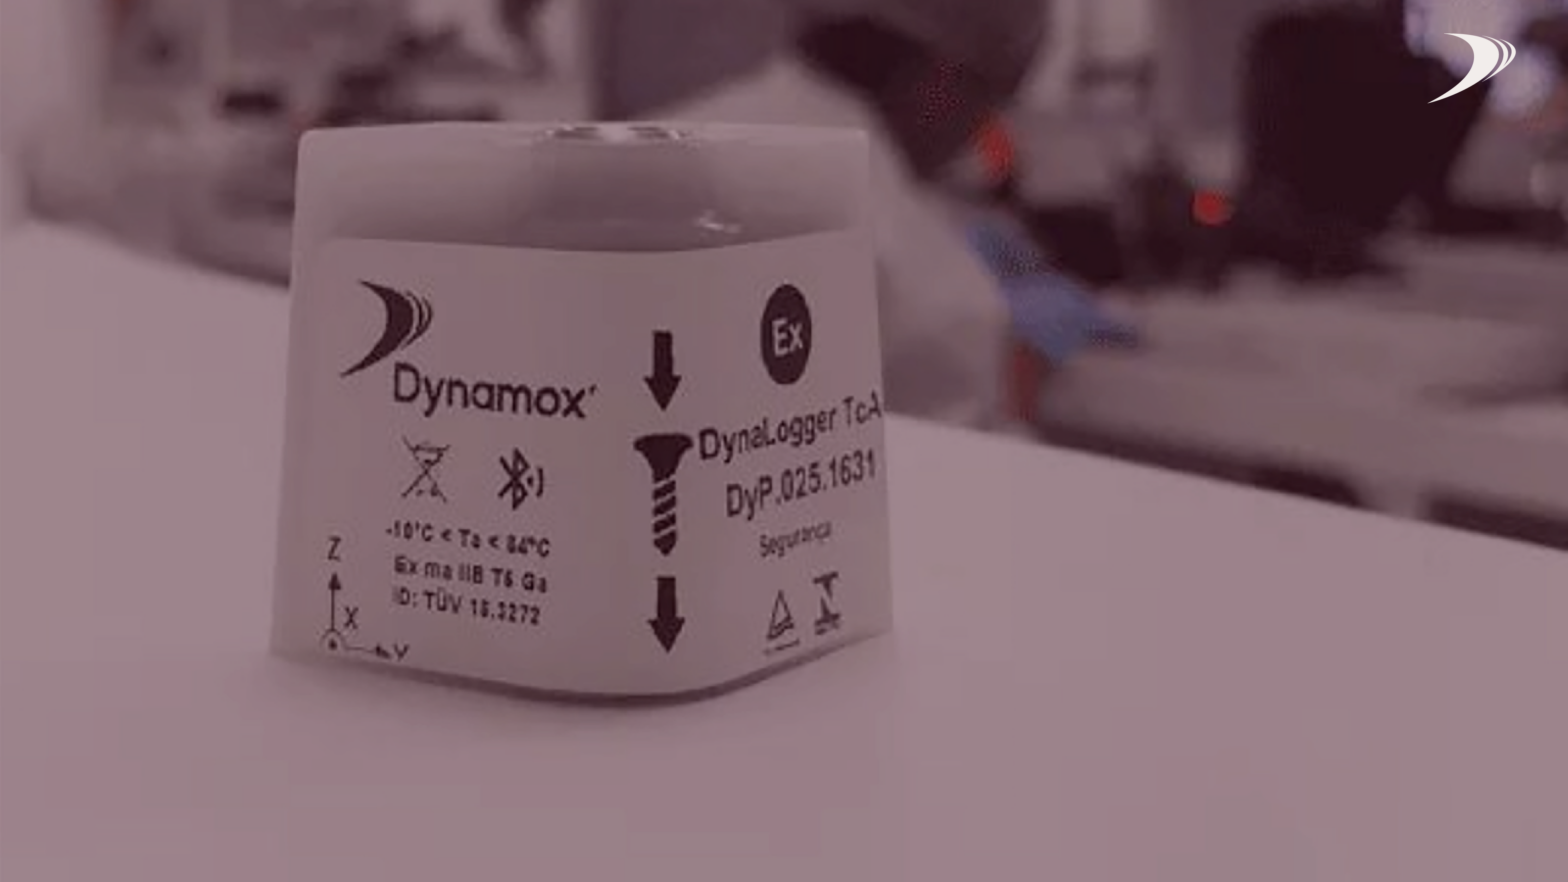 Atmósferas explosivas: Dynamox recibe la certificación AEX